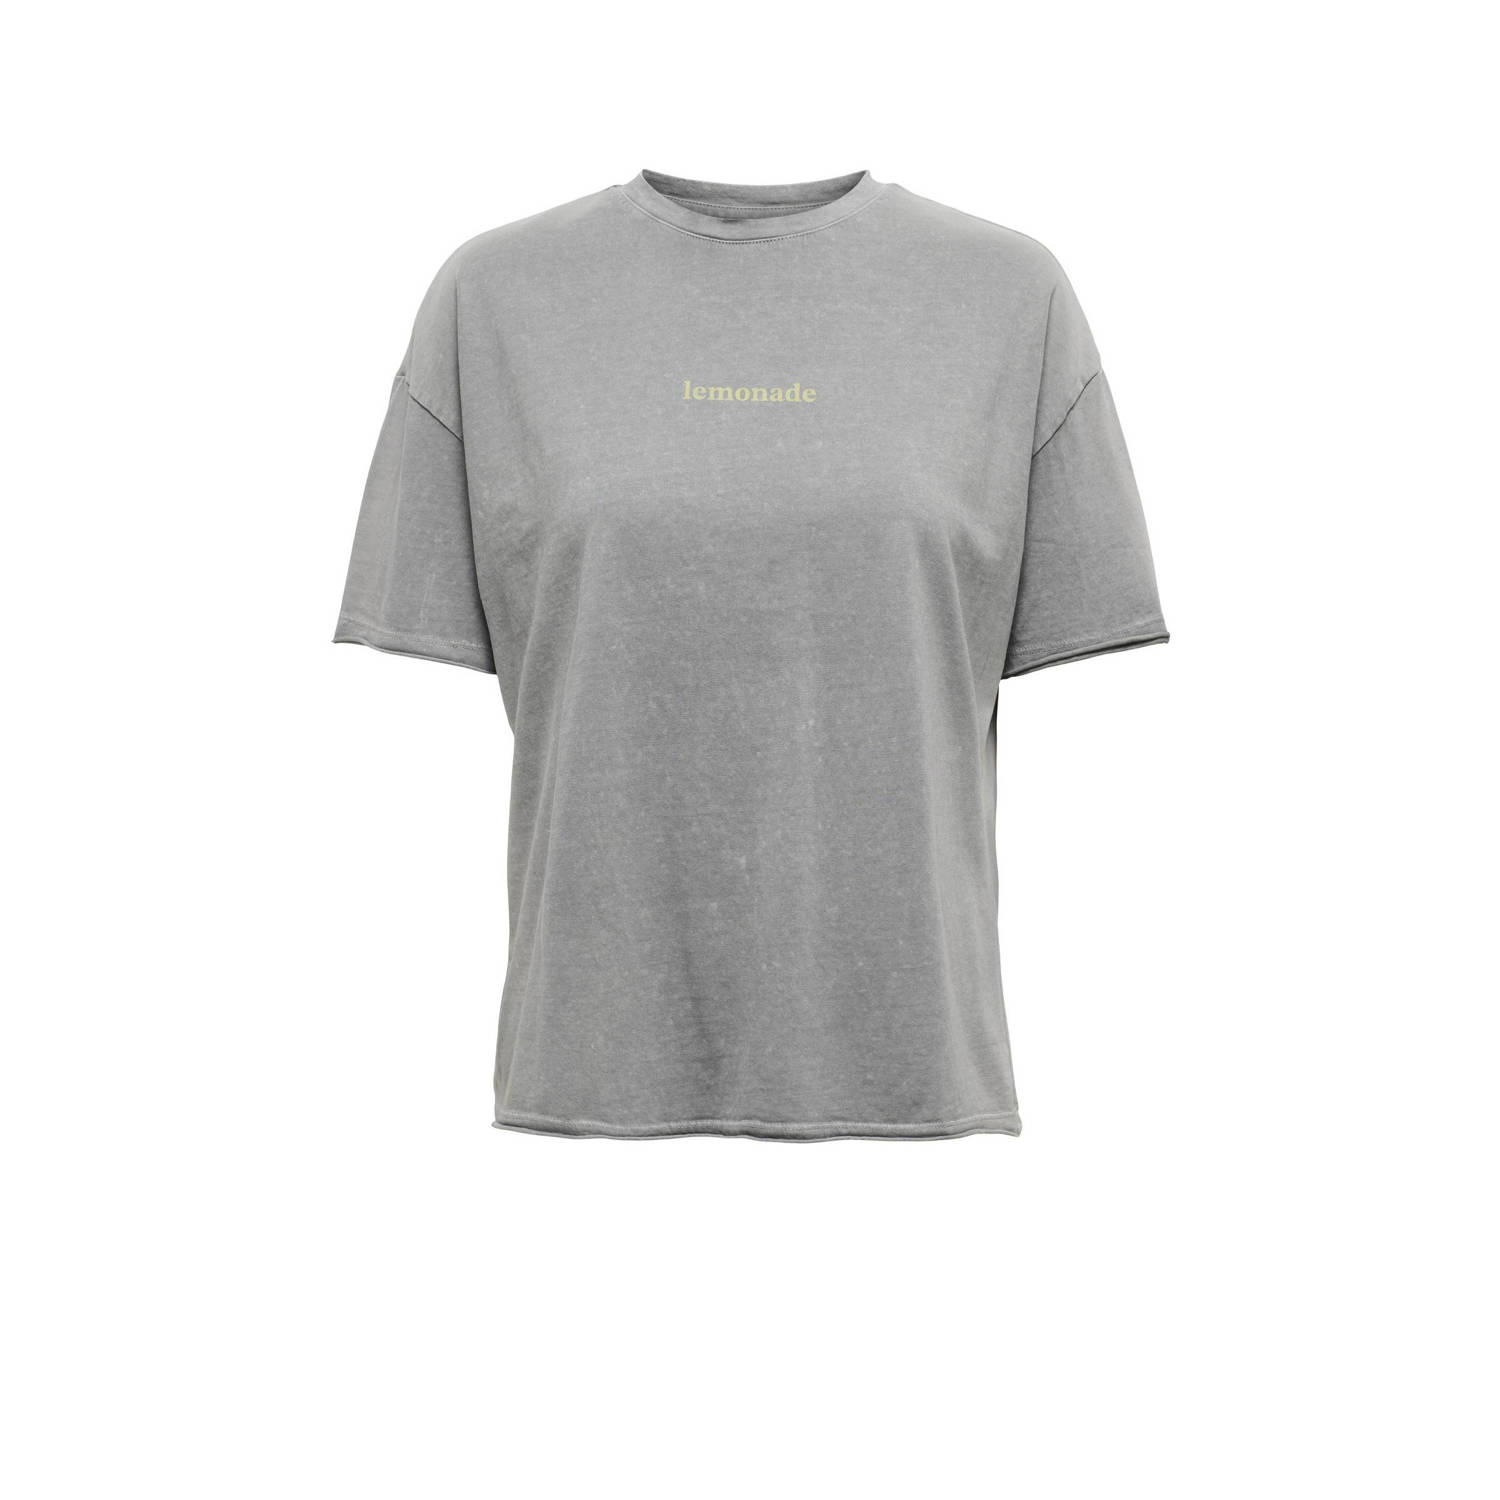 ONLY T-shirt ONLKINNA met printopdruk grijs geel